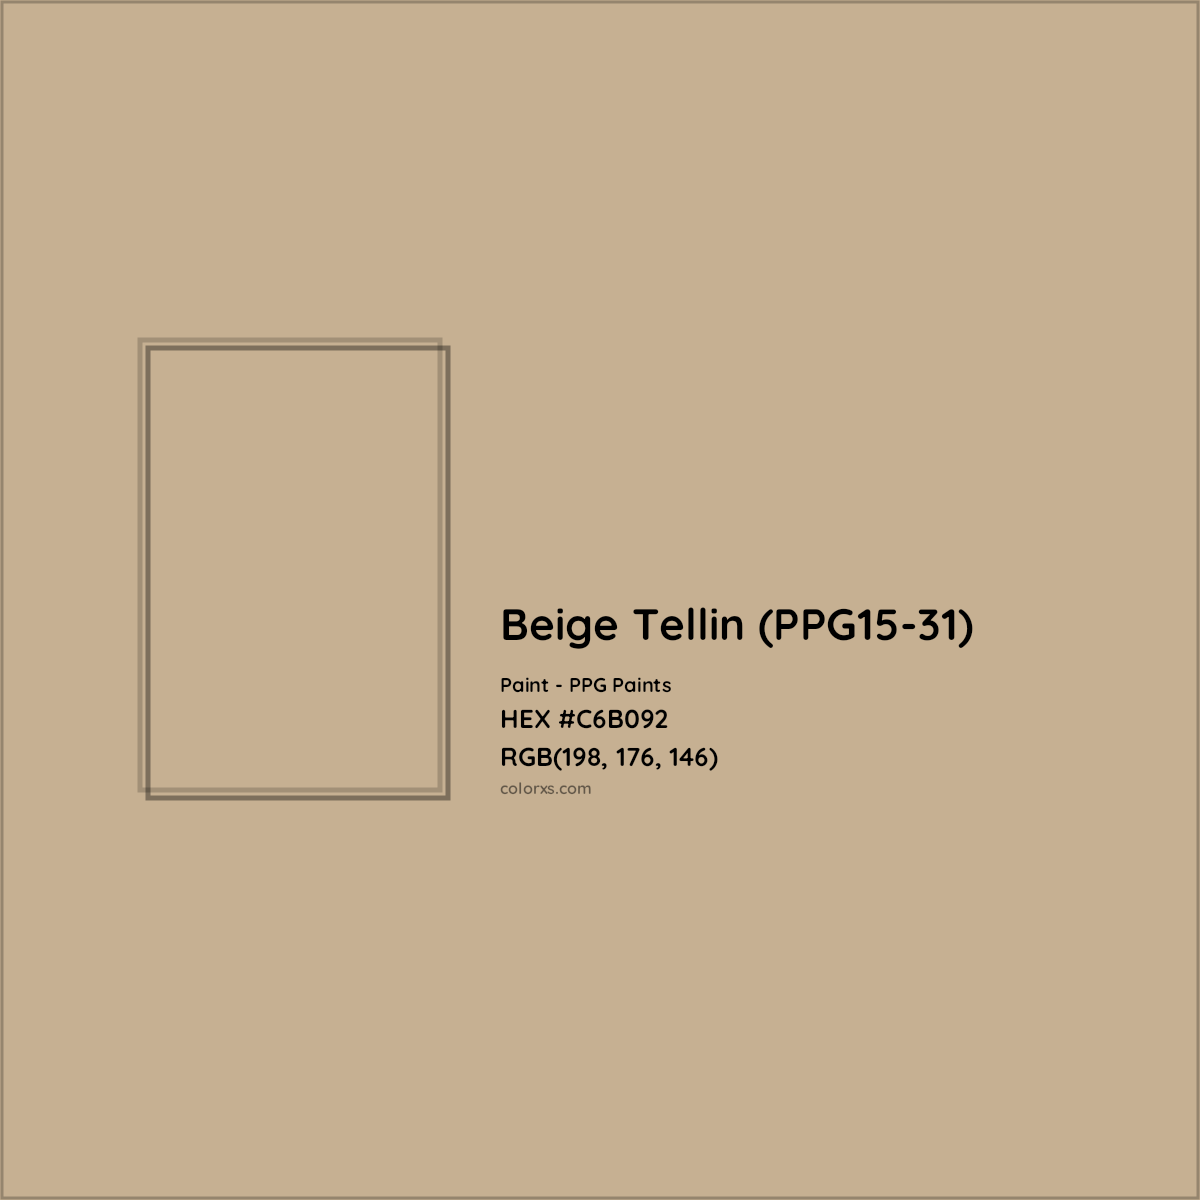 HEX #C6B092 Beige Tellin (PPG15-31) Paint PPG Paints - Color Code